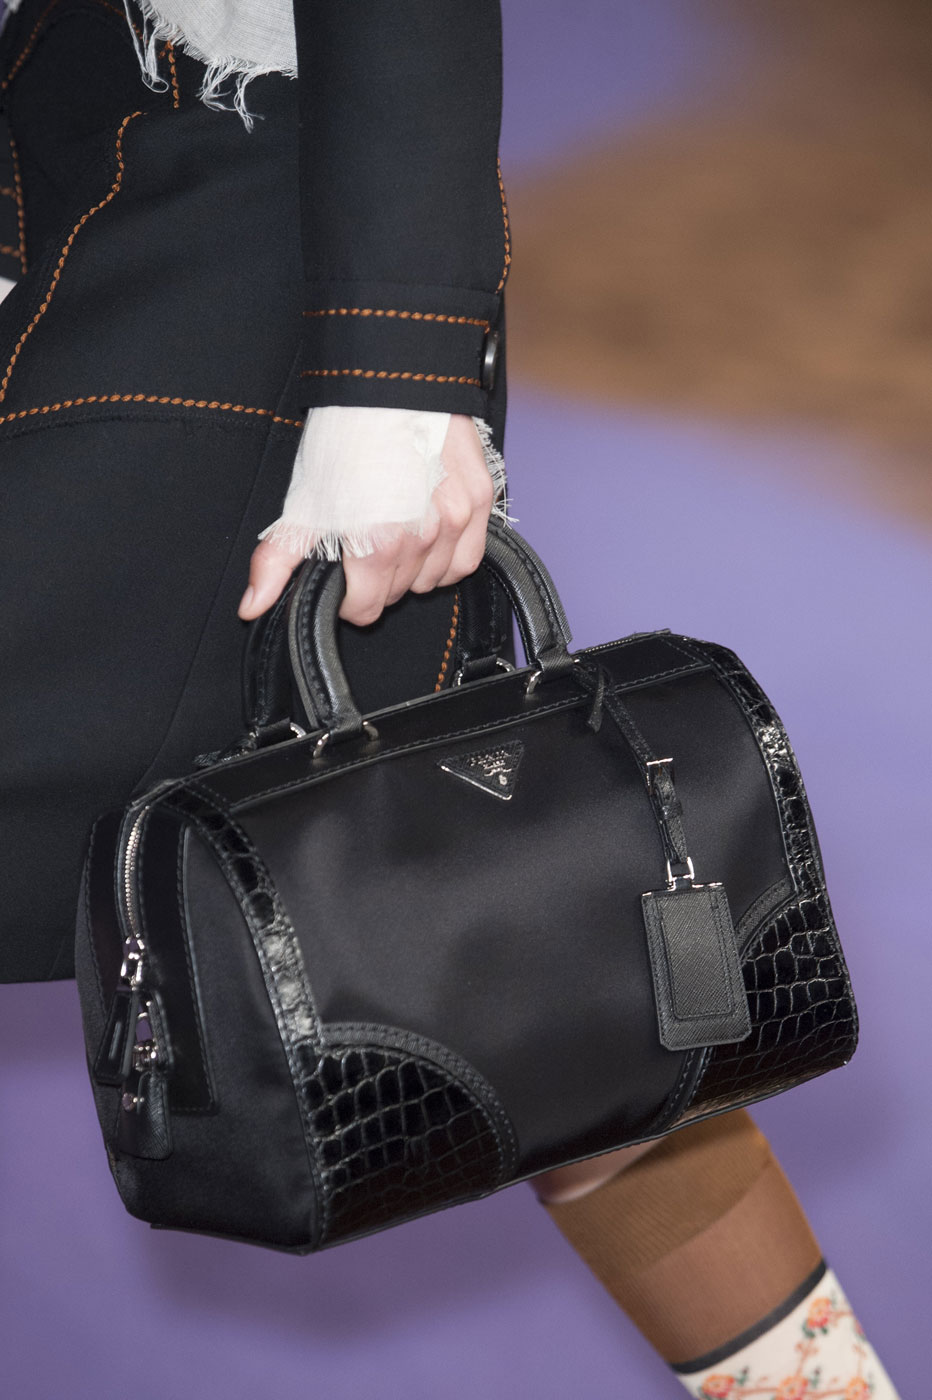 Prada Spring 2015 | The 7 Top Bag Trends For Spring 2015 | POPSUGAR Fashion